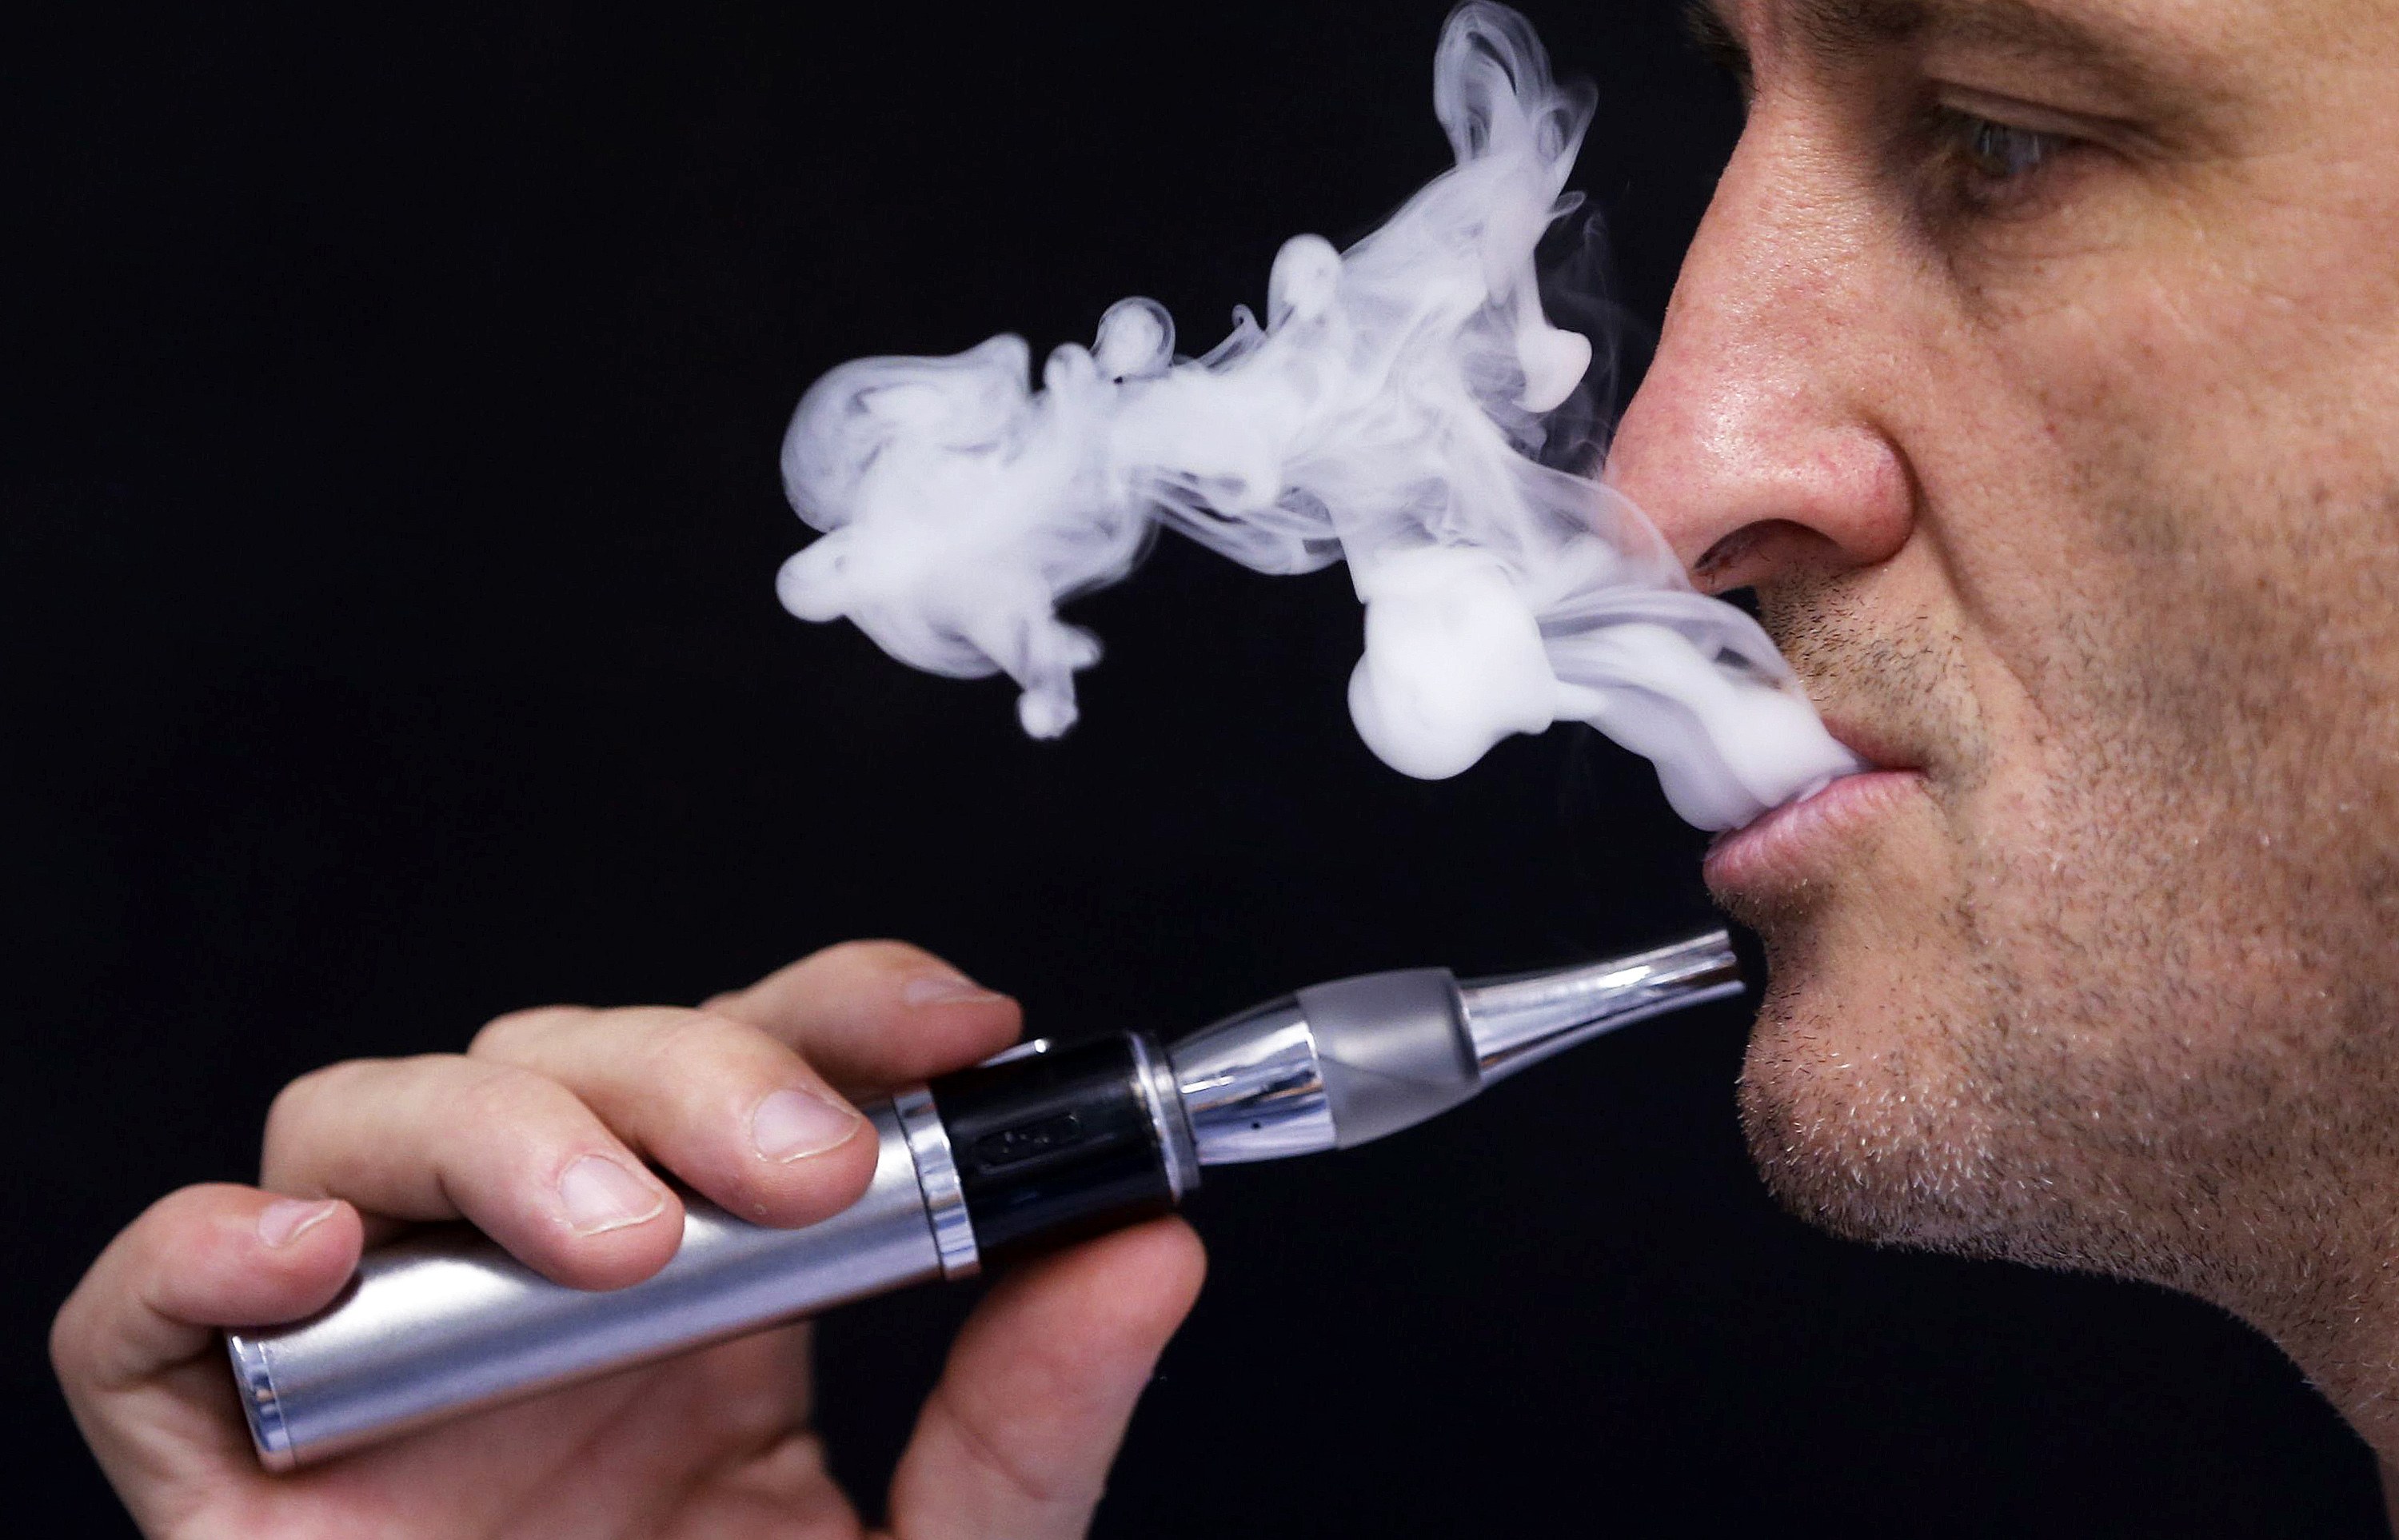 Τα ηλεκτρονικά τσιγάρα ίσως περιέχουν περισσότερες καρκινογόνες ουσίες